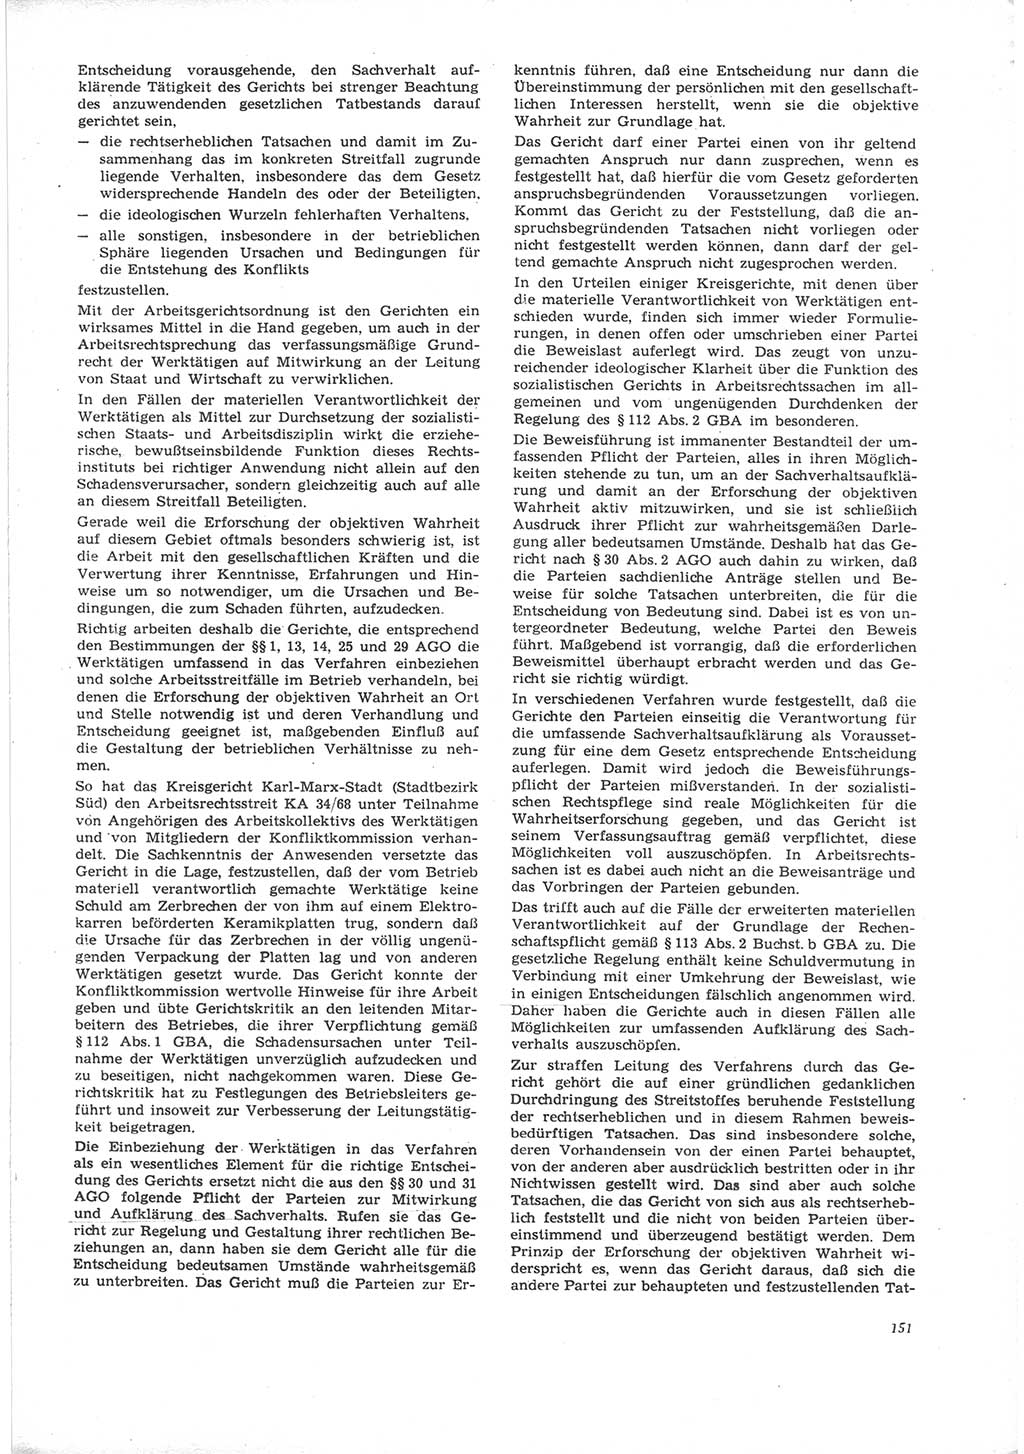 Neue Justiz (NJ), Zeitschrift für Recht und Rechtswissenschaft [Deutsche Demokratische Republik (DDR)], 24. Jahrgang 1970, Seite 151 (NJ DDR 1970, S. 151)